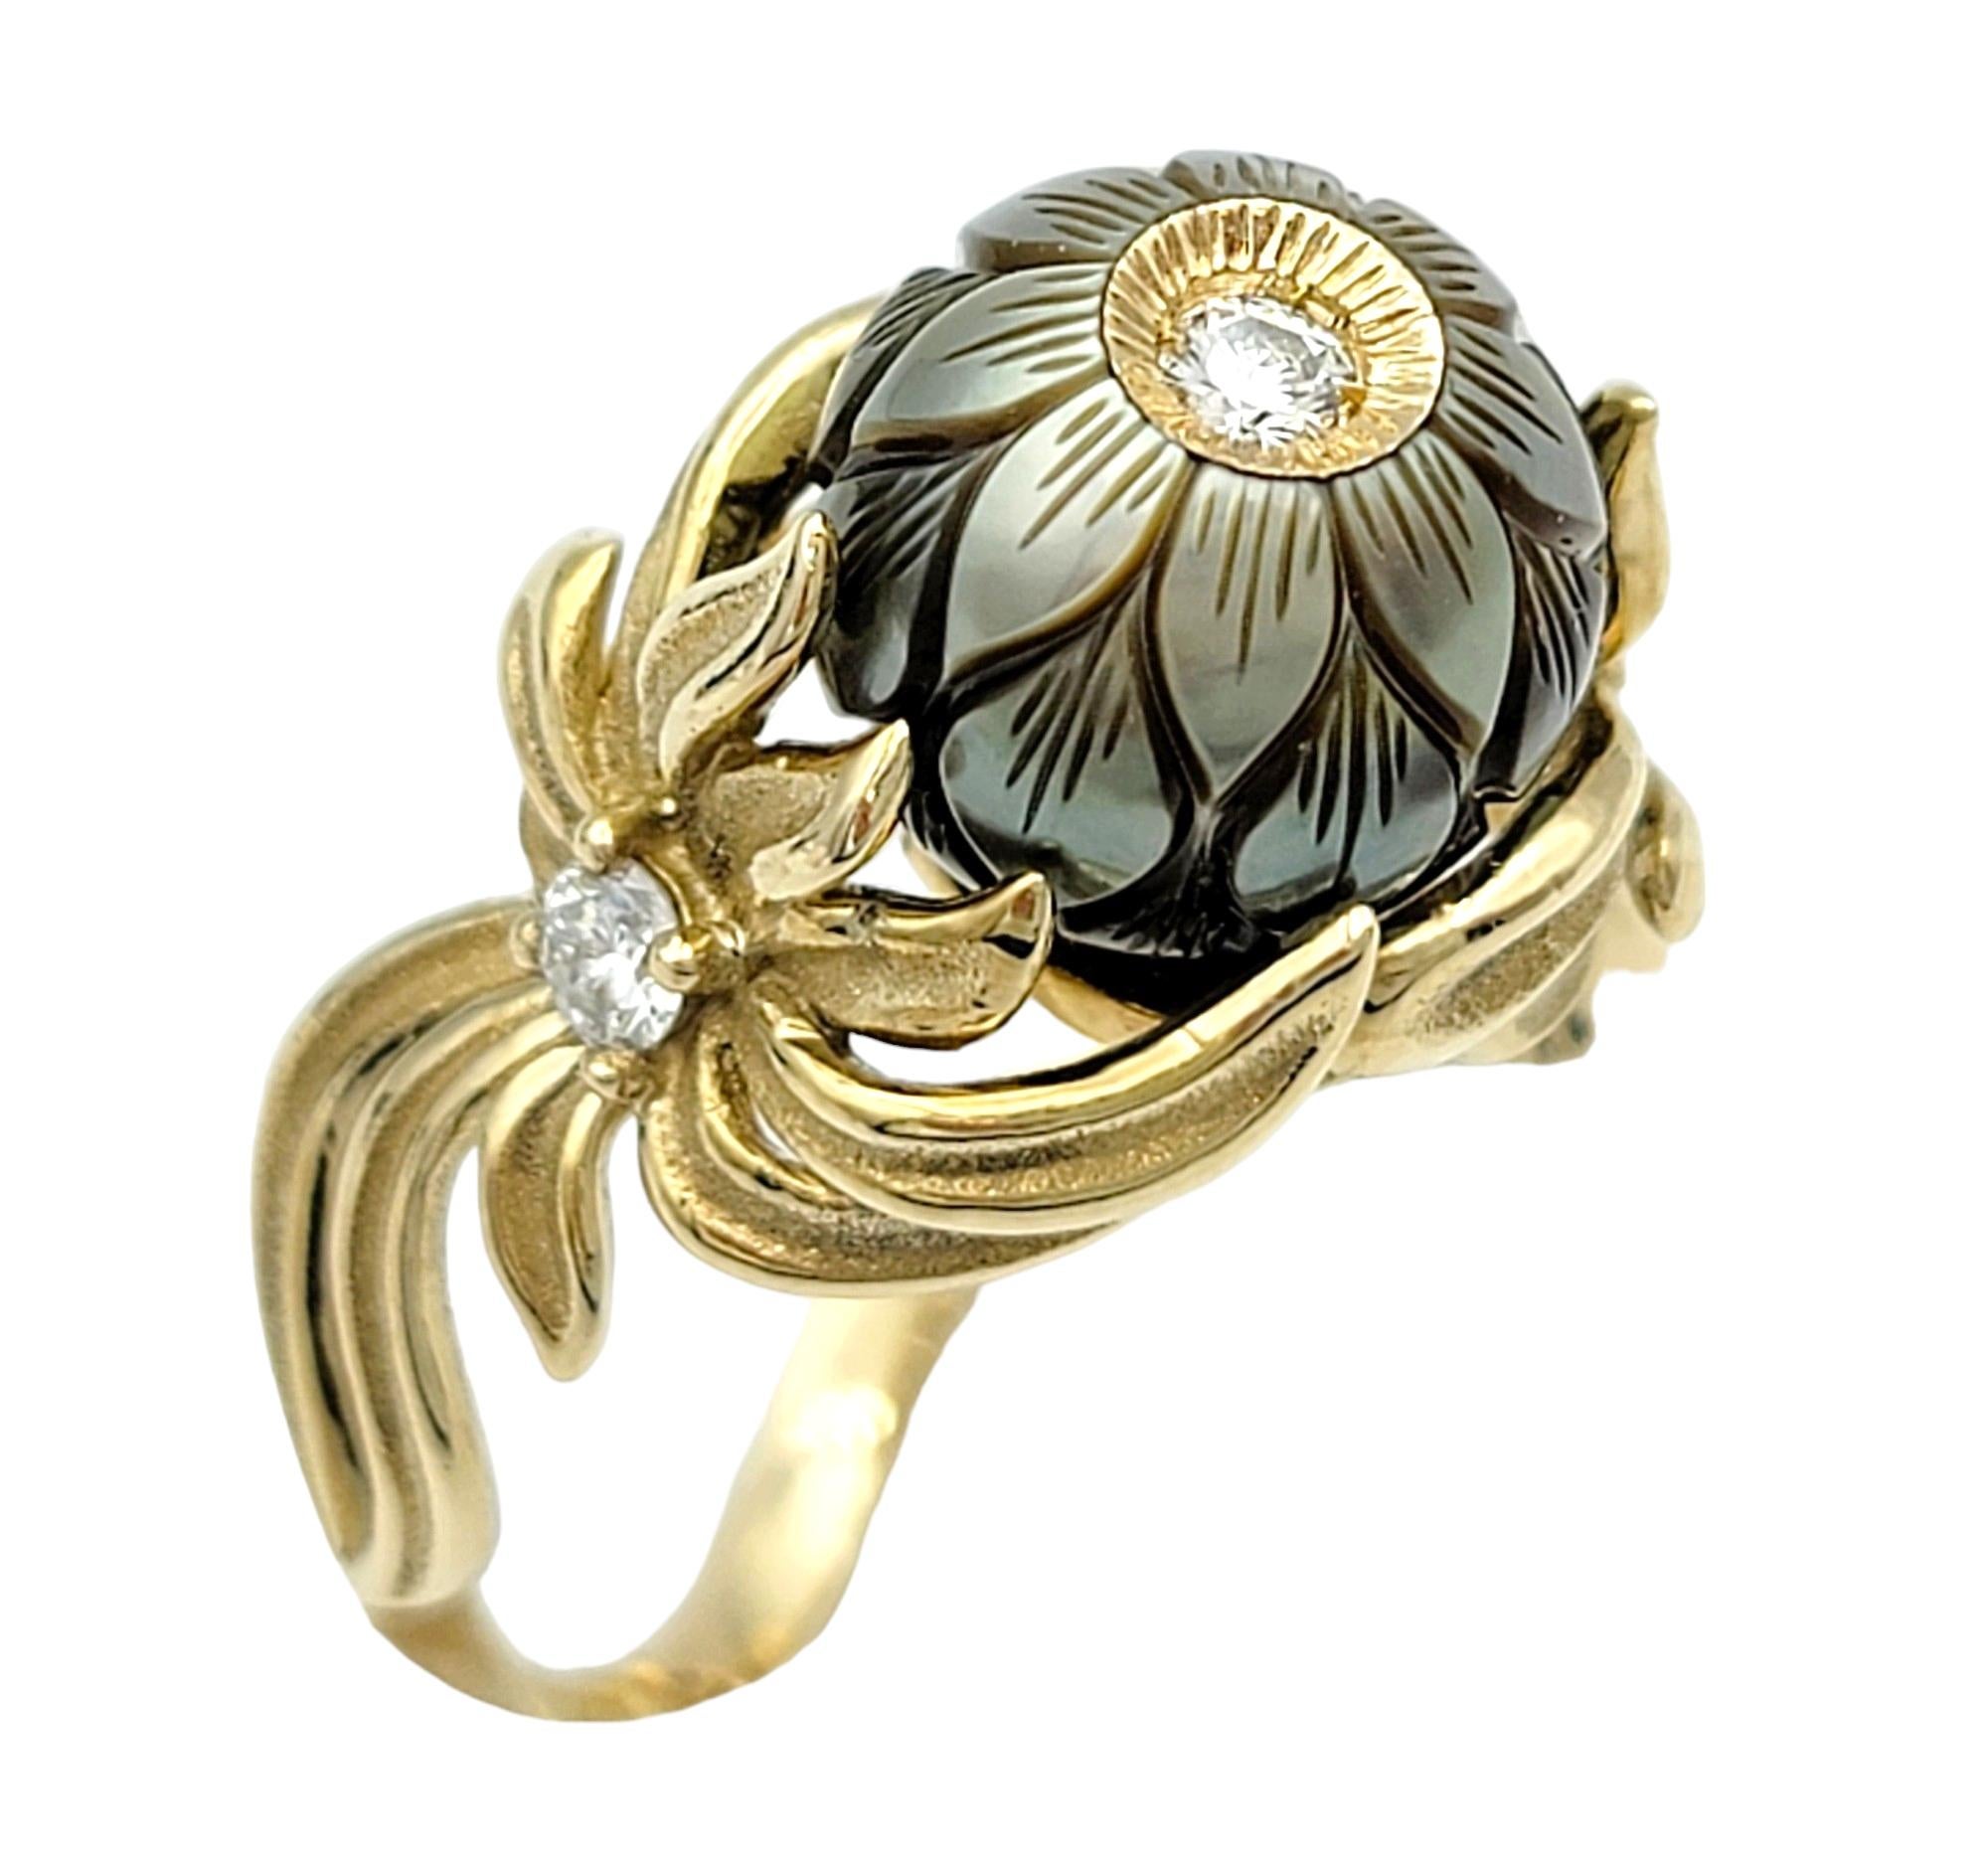 Ringgröße: 8

Dieser bezaubernde Ring von Galatea ist eine fesselnde Mischung aus Eleganz und von der Natur inspirierter Schönheit. Ihr Herzstück ist eine glänzende chinesische Süßwasserperle, die mit einem zarten Blumenmotiv verziert ist und